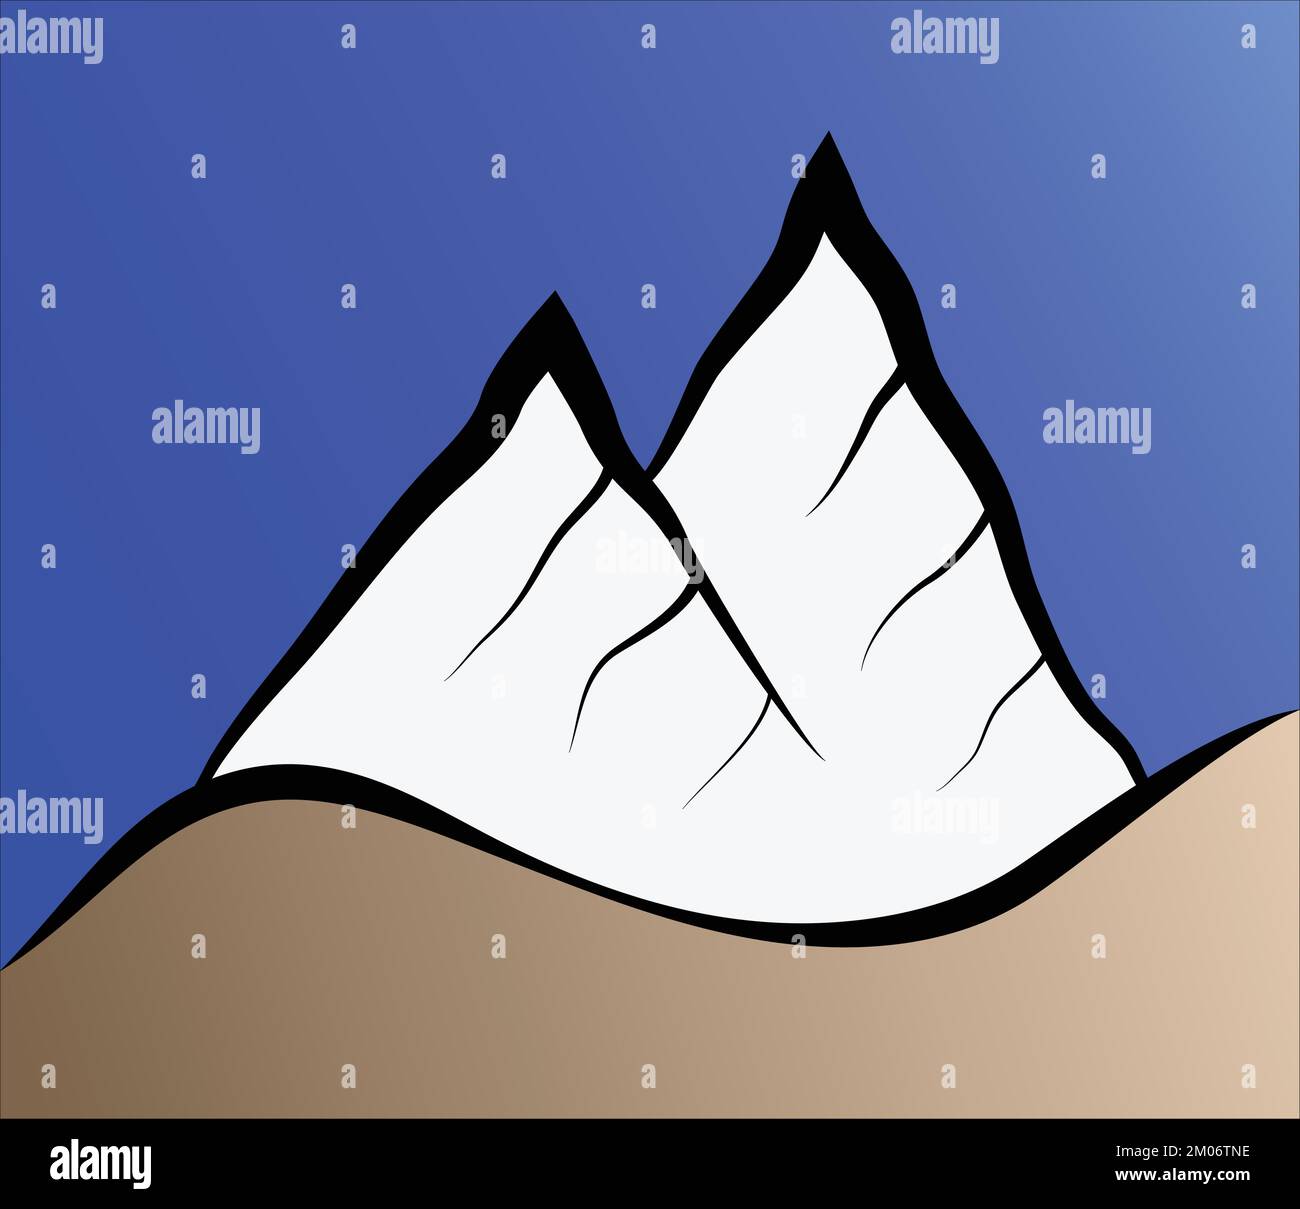 illustration vectorielle de la silhouette de montagne de l'himalaya logo terrain extrême mont everest lhotse cho oyu makalu annapurna ama dablam Illustration de Vecteur